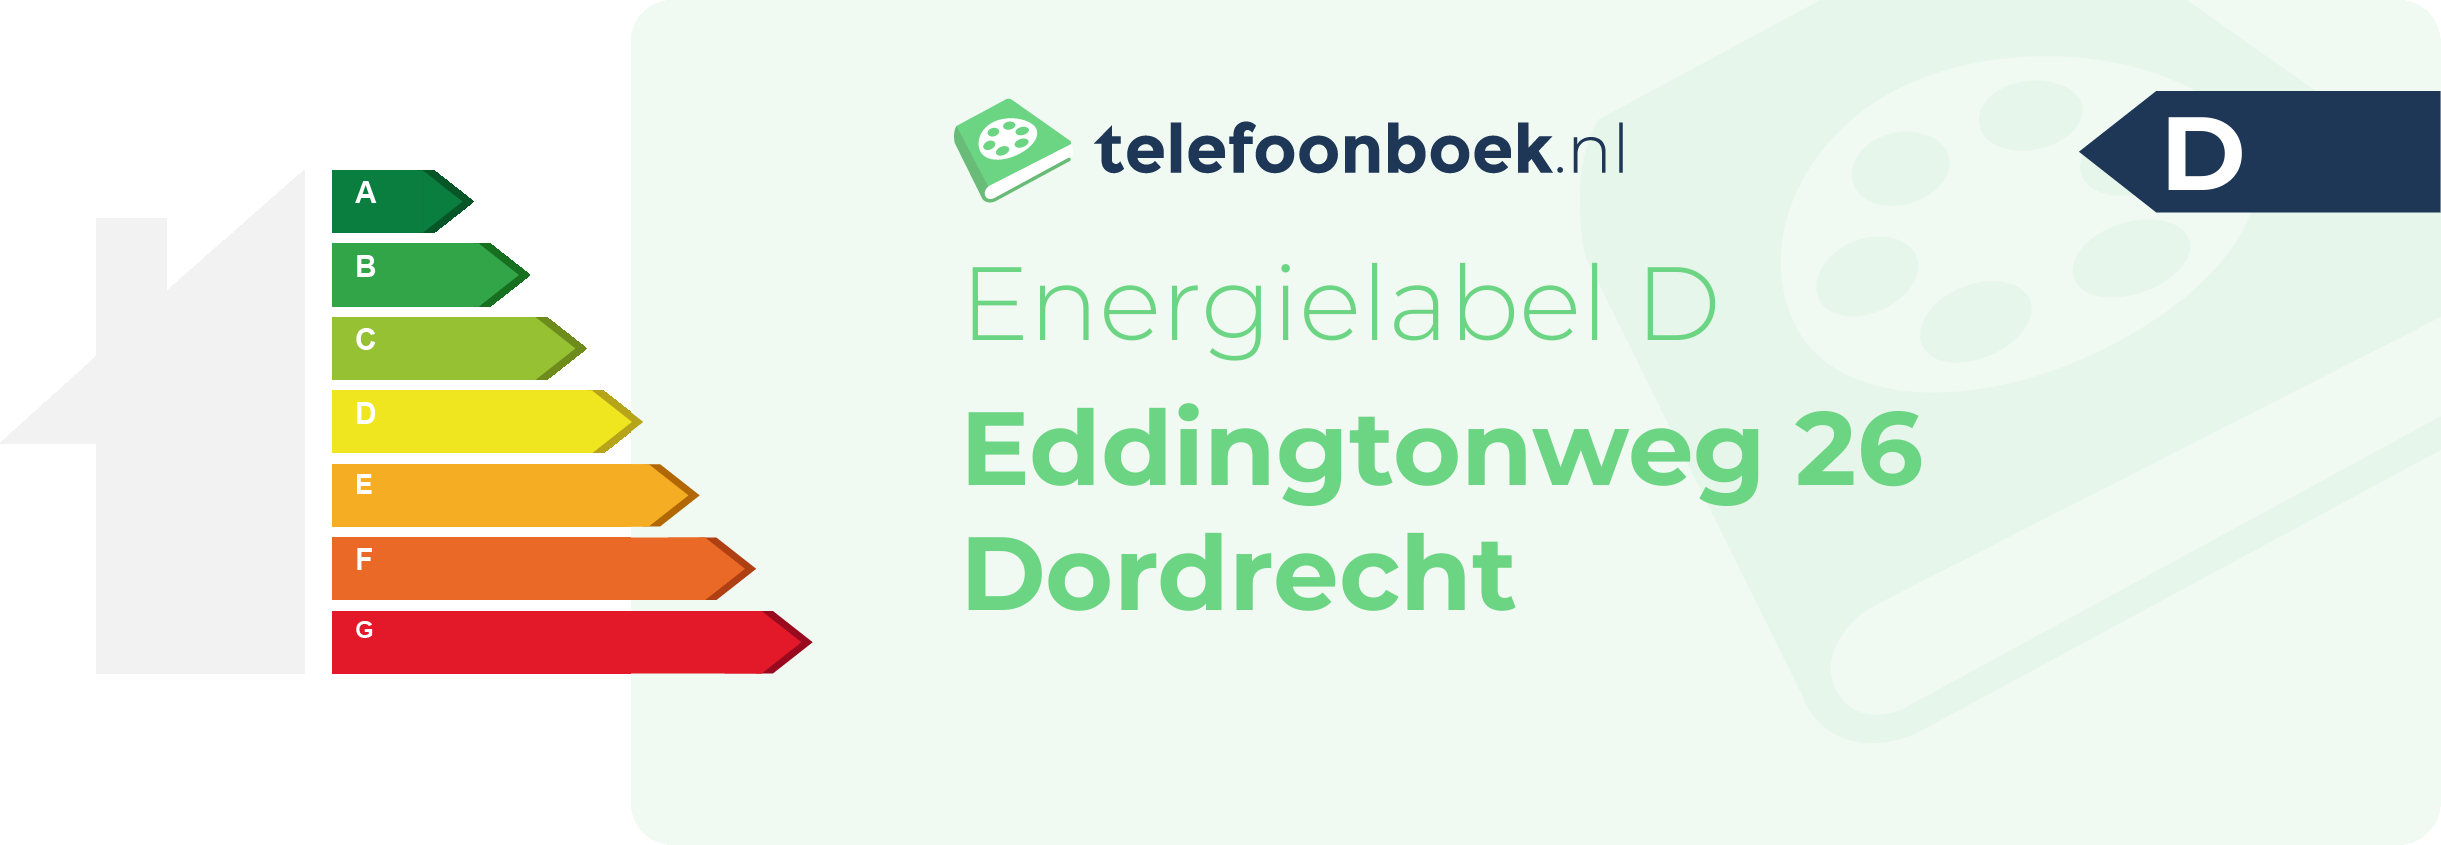 Energielabel Eddingtonweg 26 Dordrecht